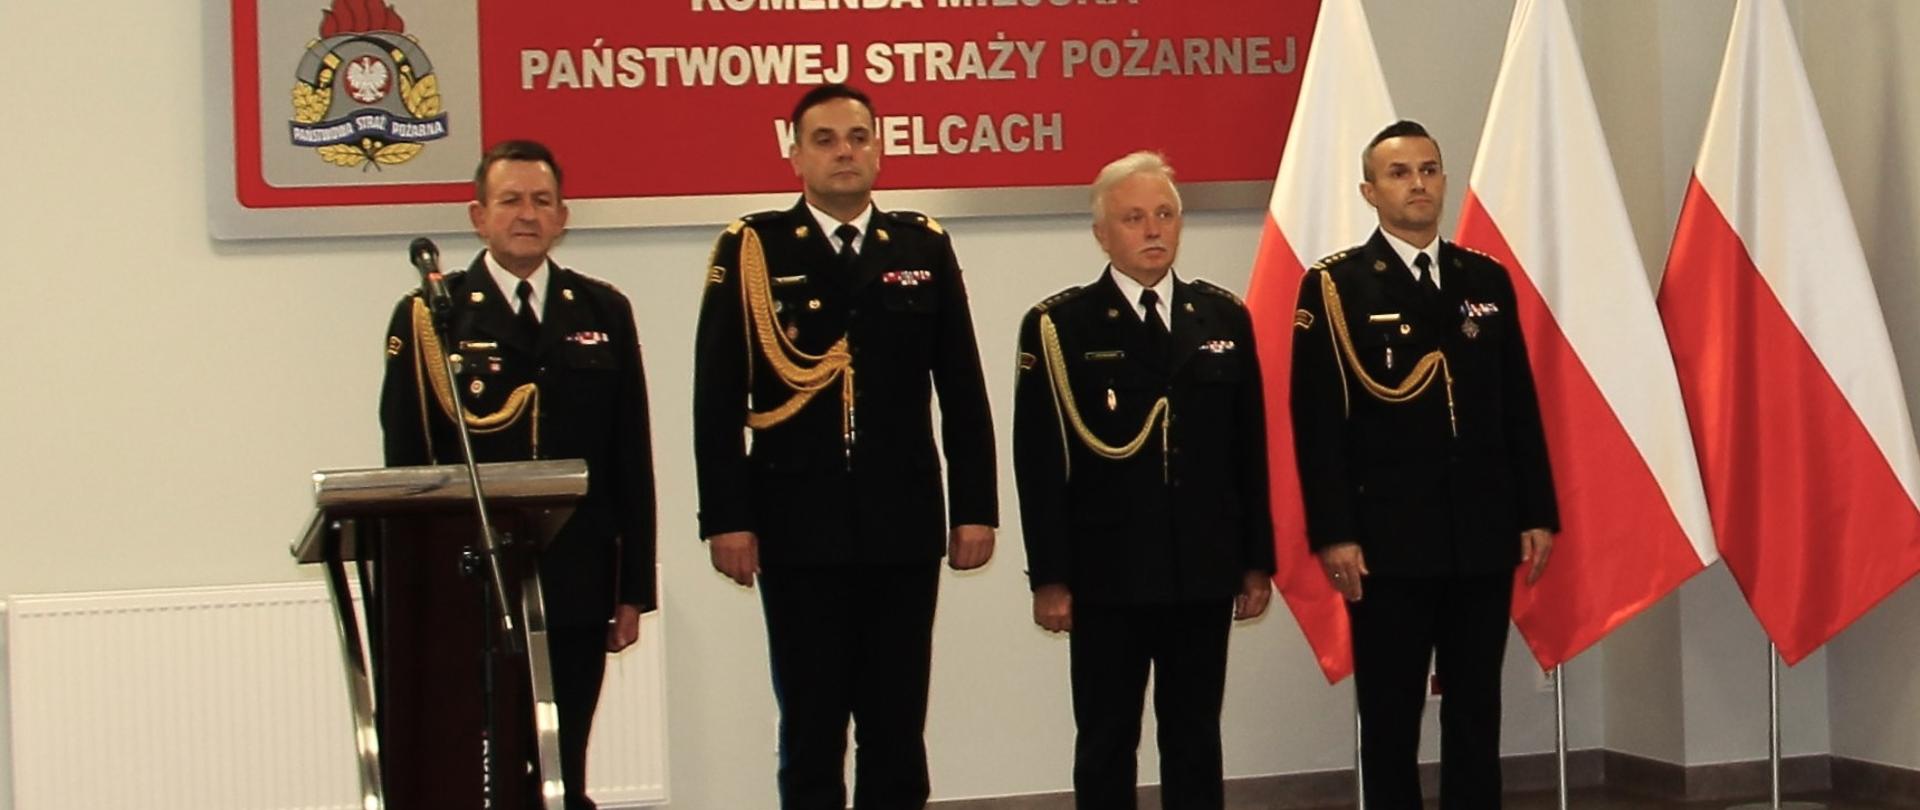 Zdjęcie przedstawia od lewej st. bryg. Sławomir Karwat, nadbryg. Krzysztof Ciosek, st. bryg. Jarosław Piotrowski, st. bryg. Artur Brachowicz 